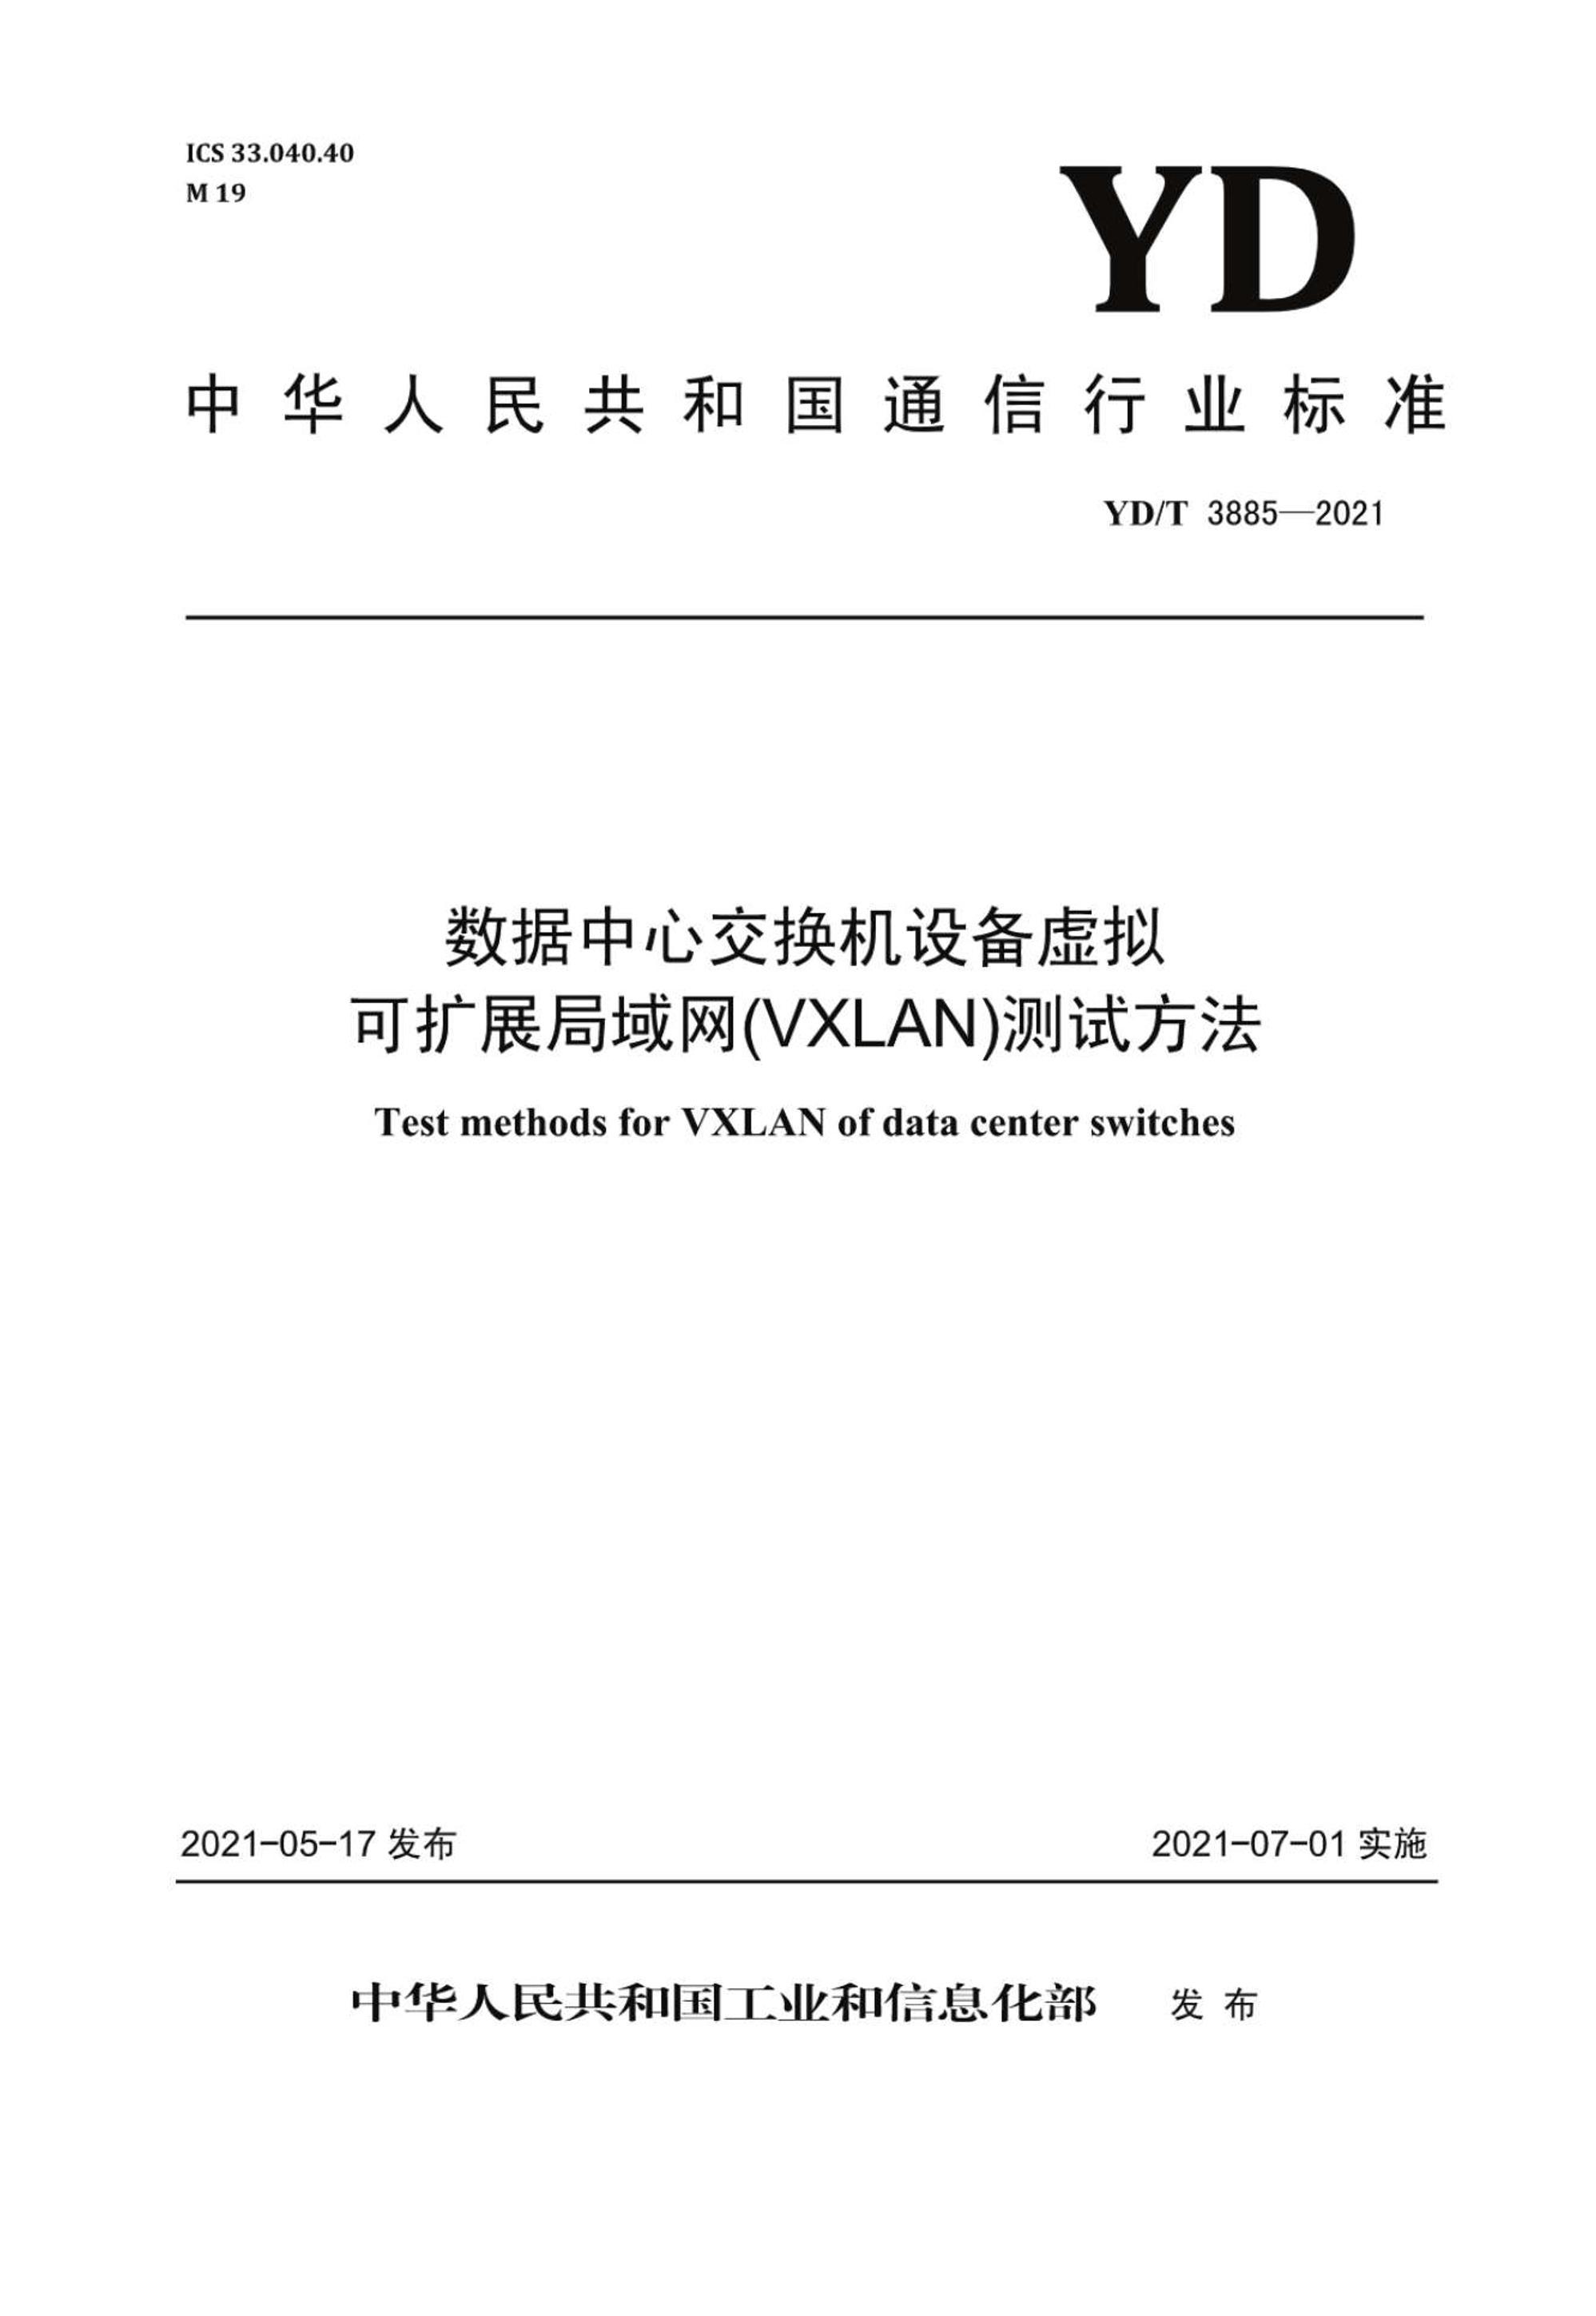 YDT 3885-2021 Ľ豸VxLANԷ.pdf1ҳ